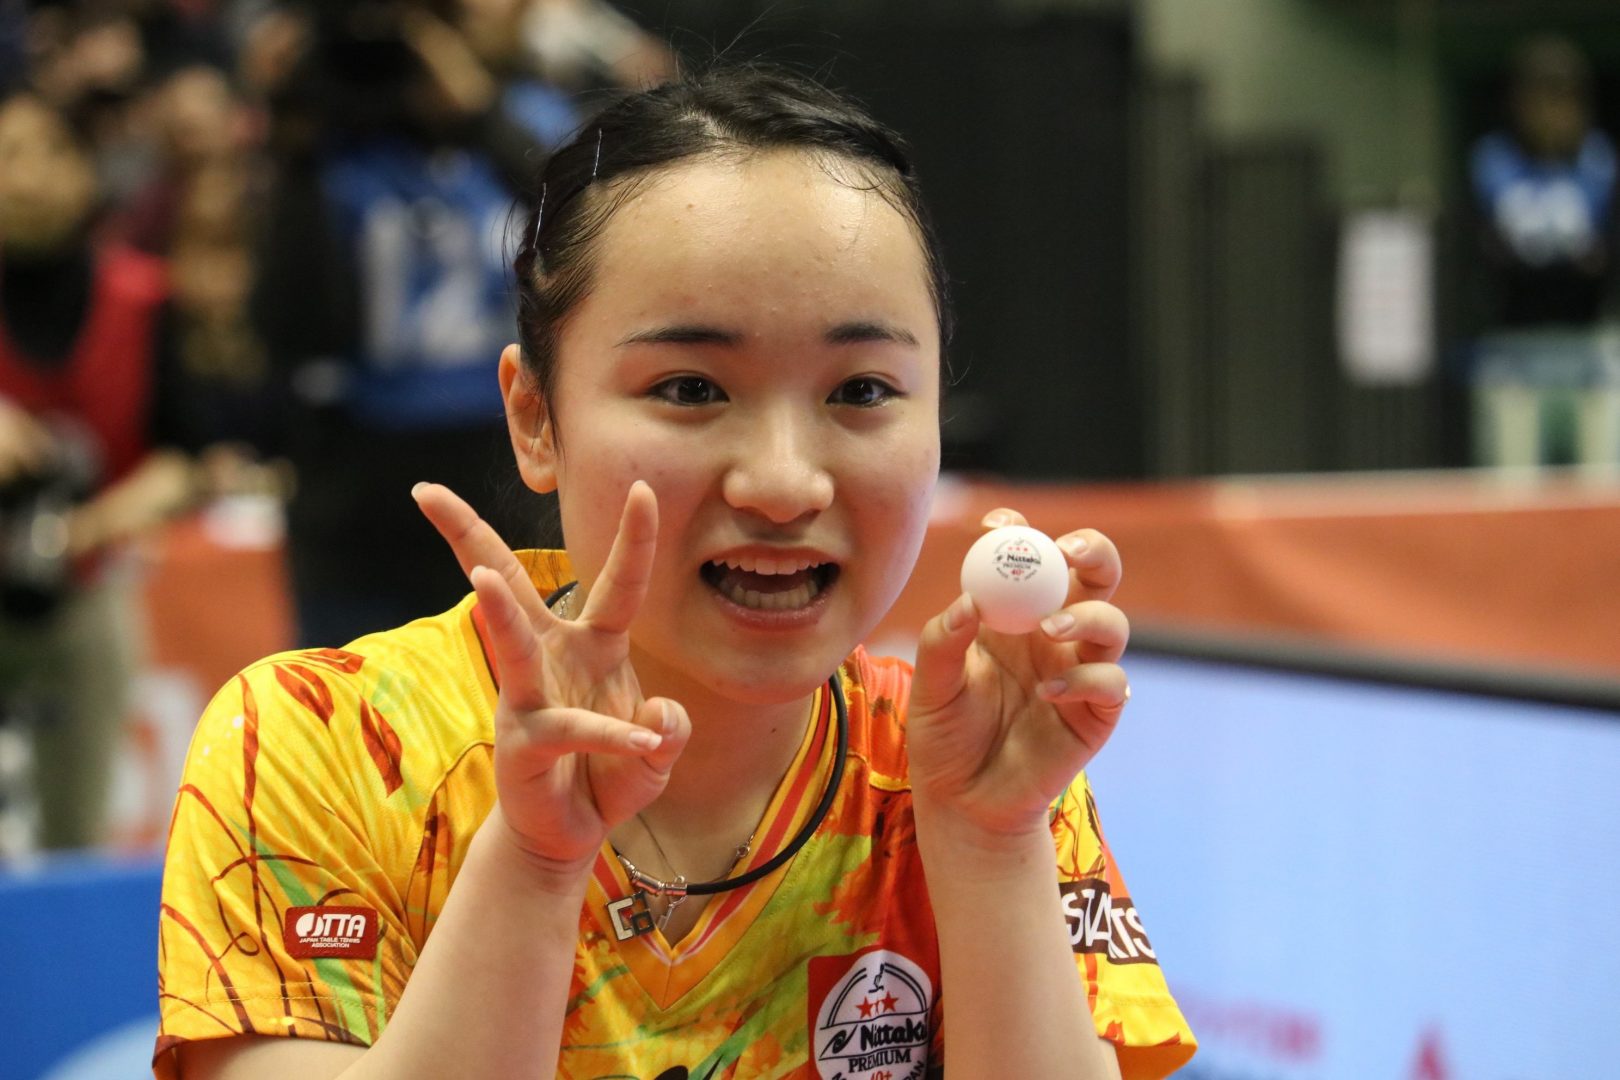 2019年 卓球界の1年はどうなる？ 全日本、世界卓球、Tリーグと目白押し